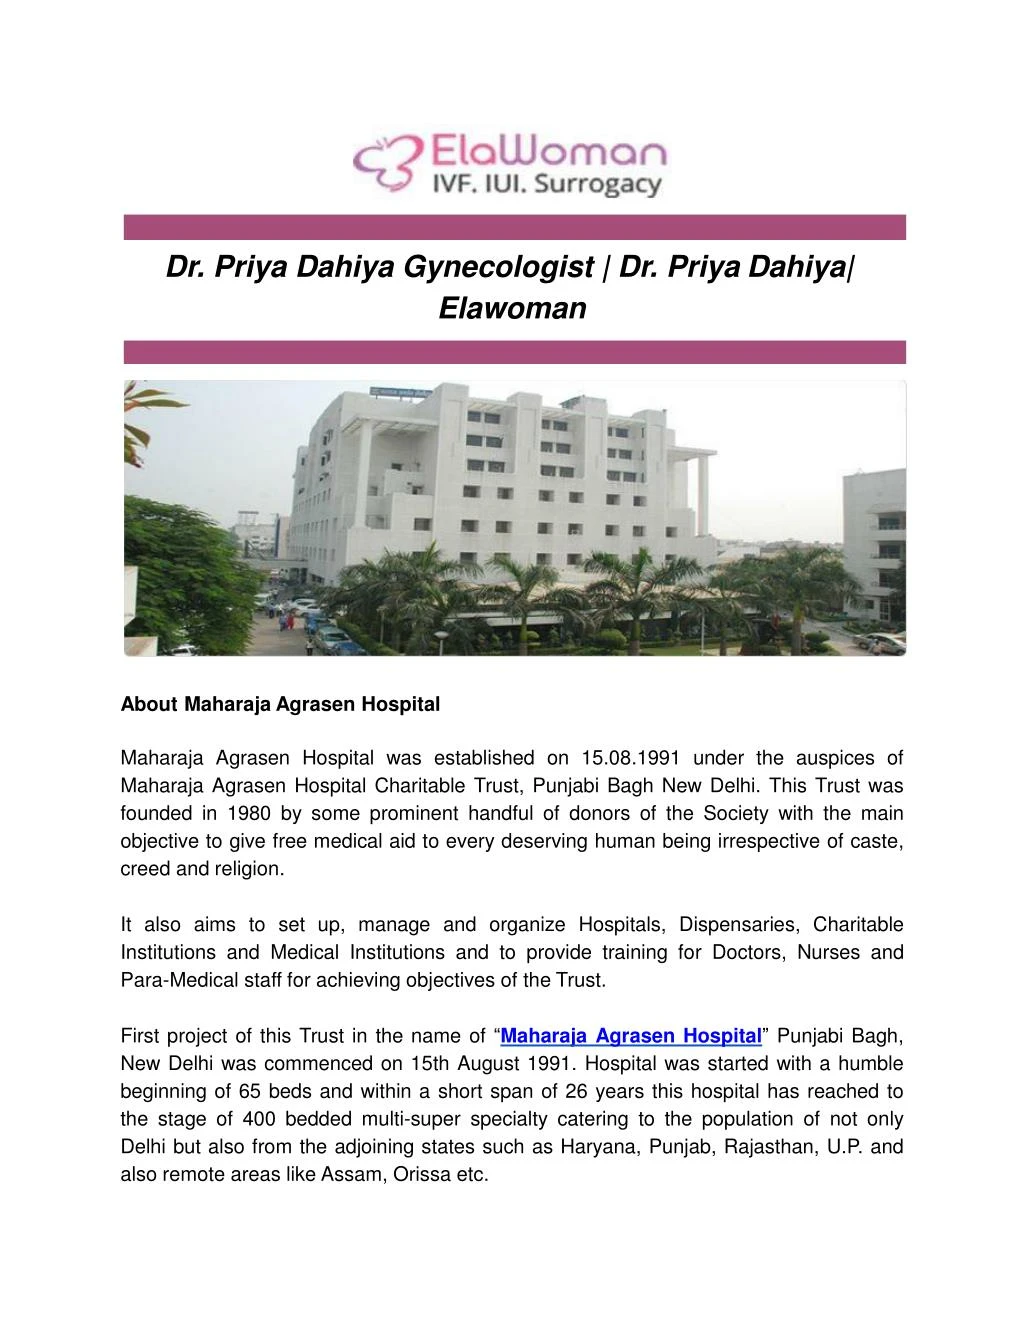 dr priya dahiya gynecologist dr priya dahiya n.